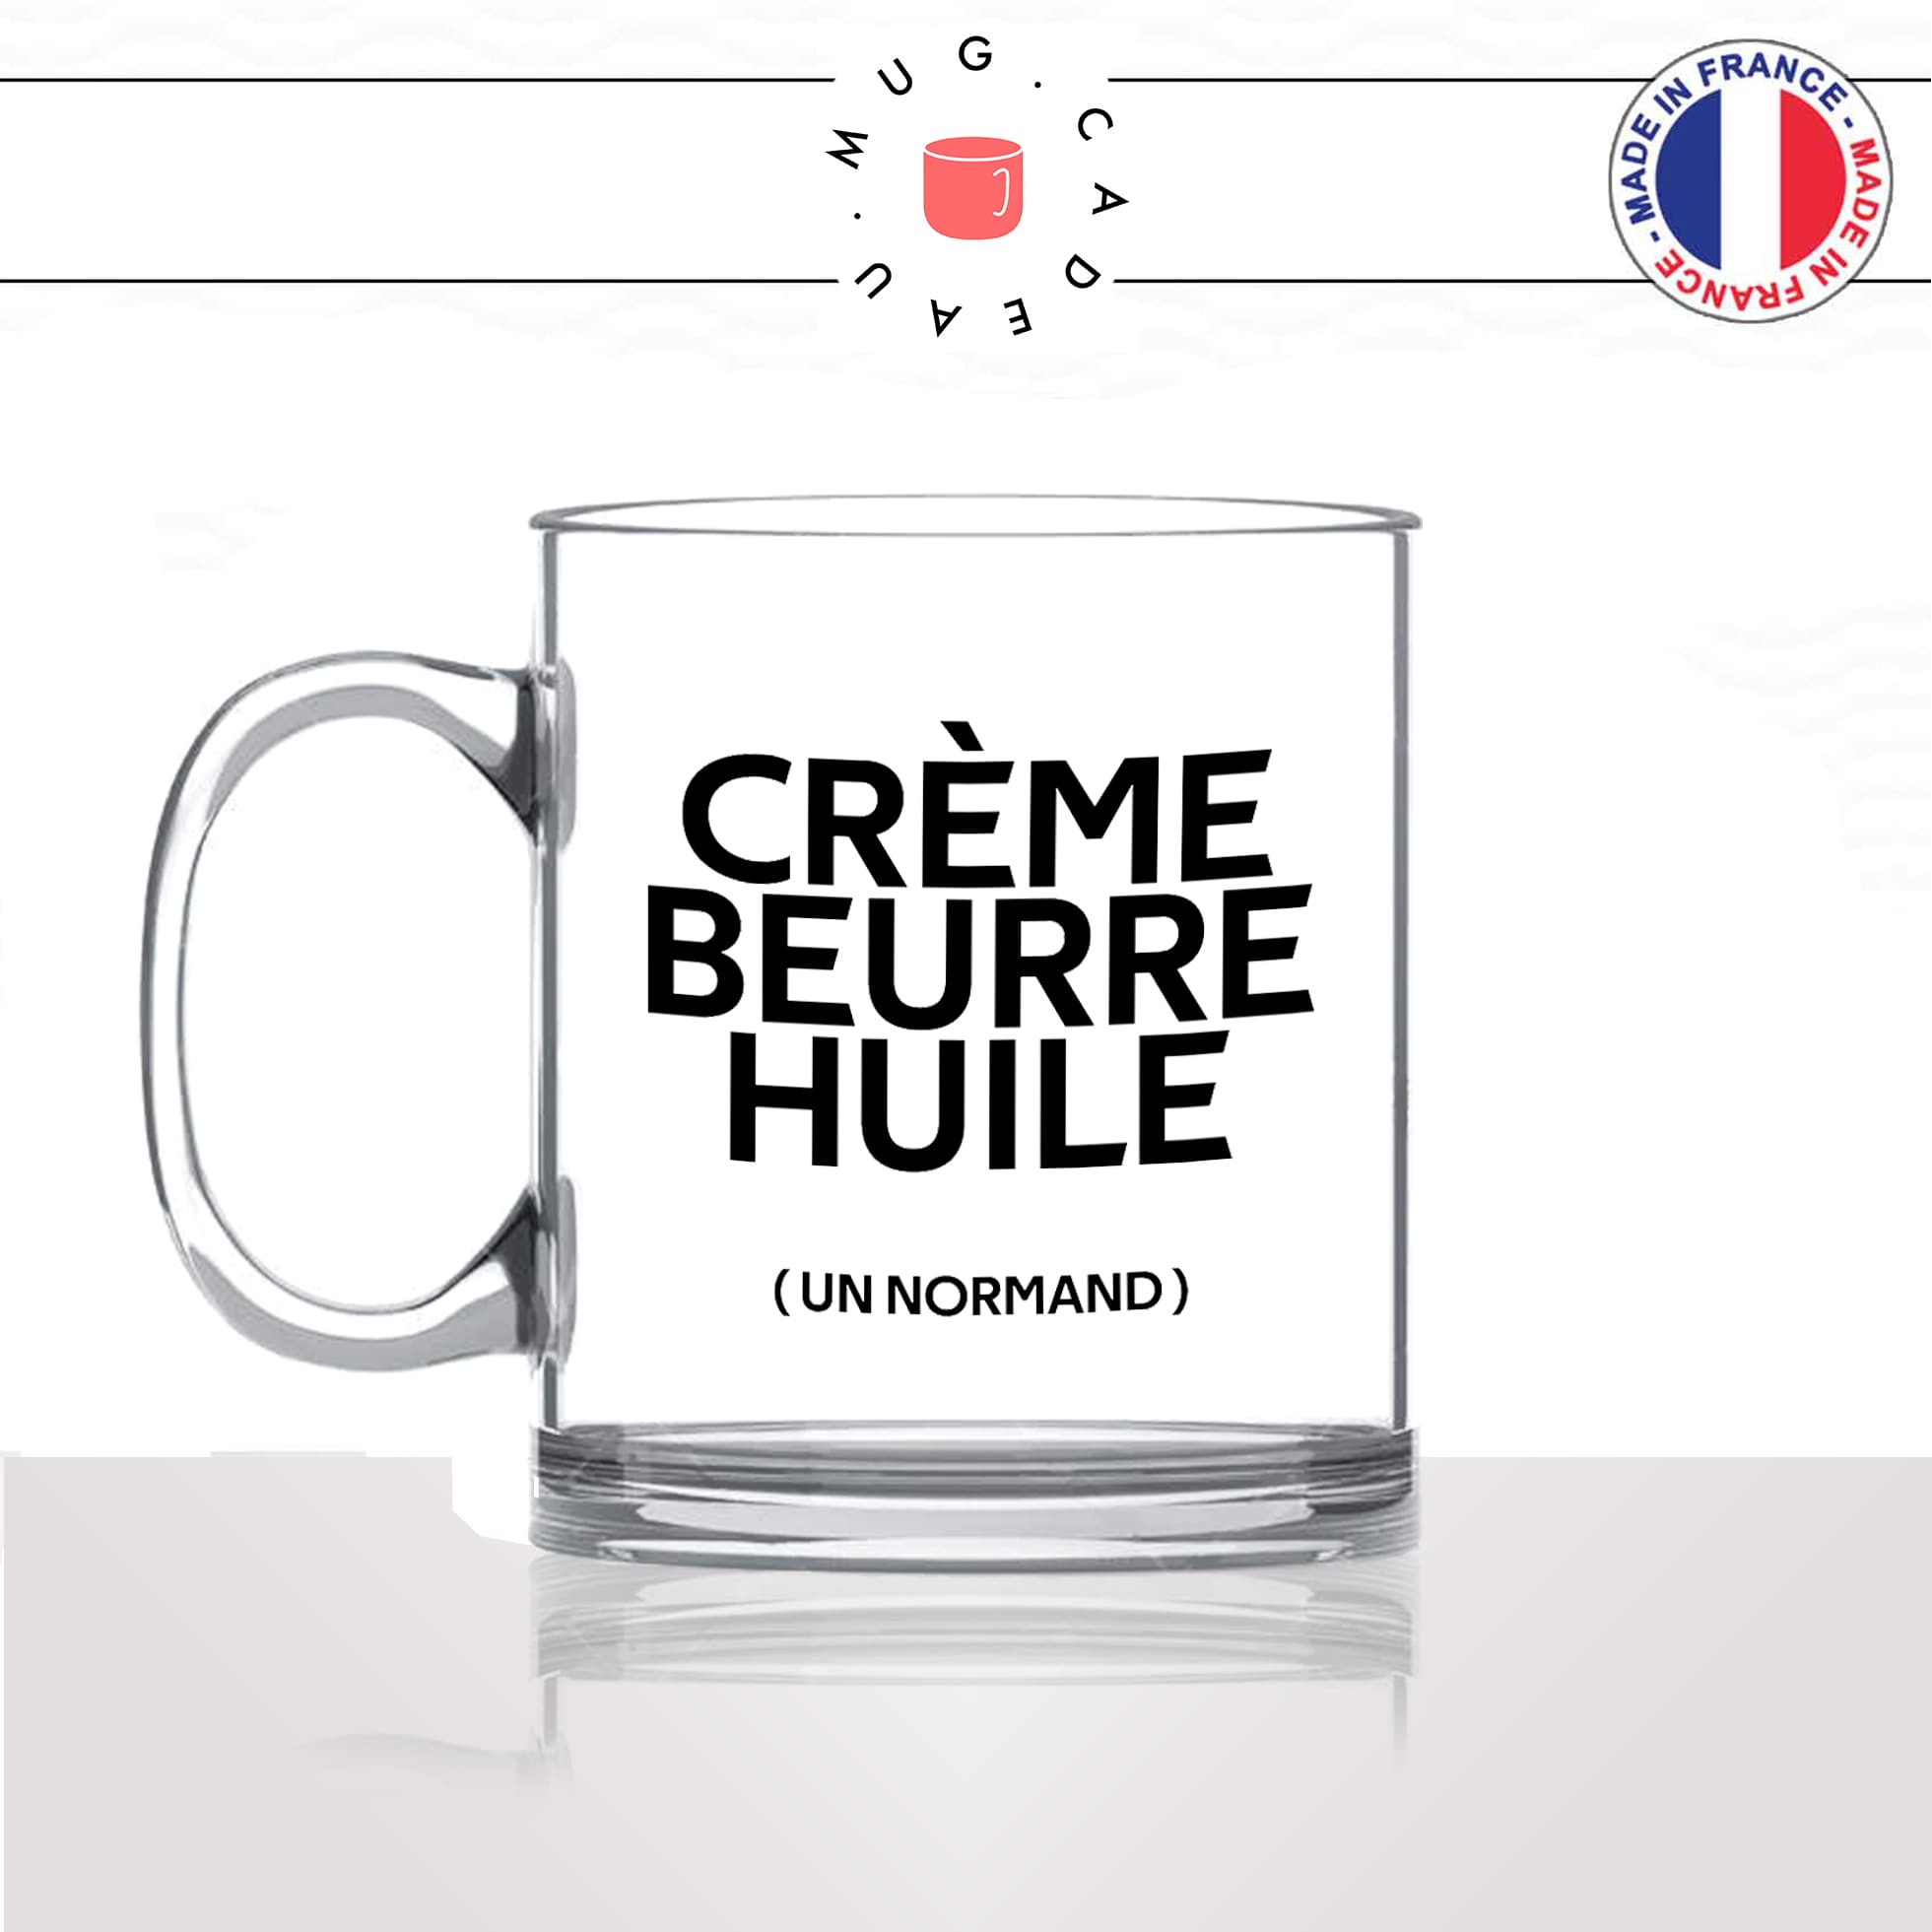 mug-tasse-en-verre-transparent-glass-creme-beurre-huile-gras-un-normand-normandie-cuisine-humour-fun-idée-cadeau-originale-cool